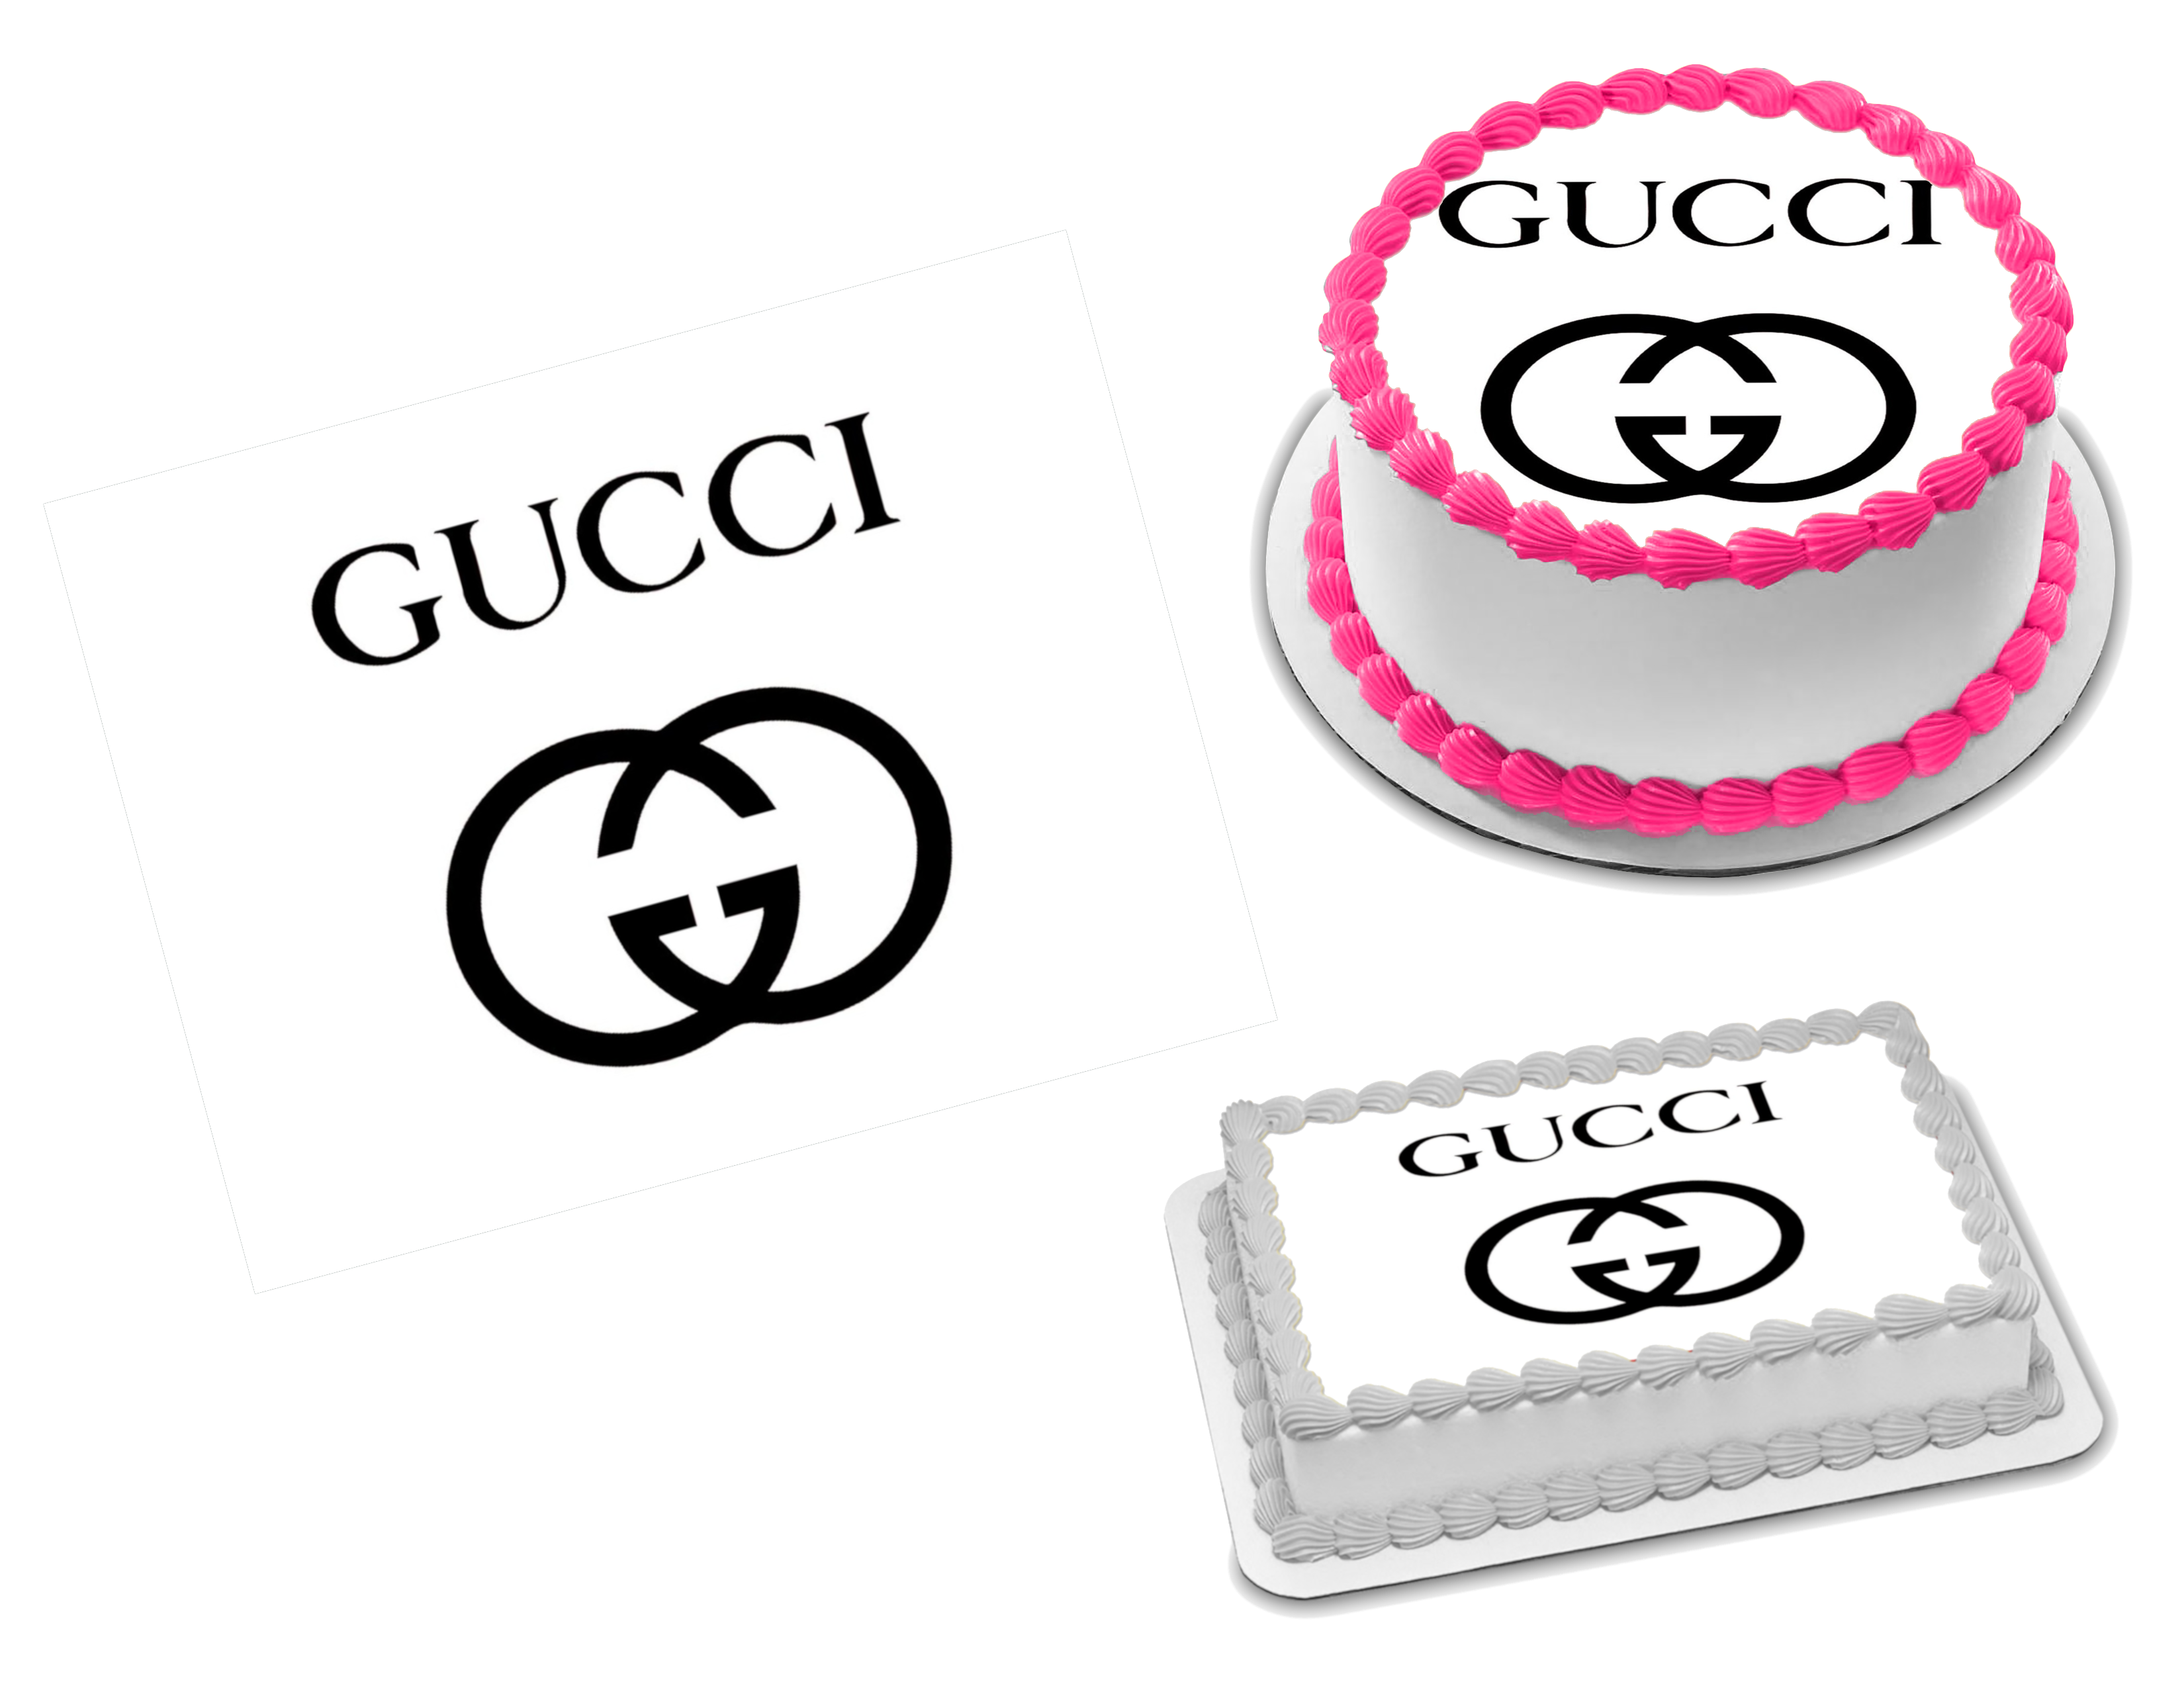 Gucci Cake and Cupcake Set  Branded Cake I custom cake